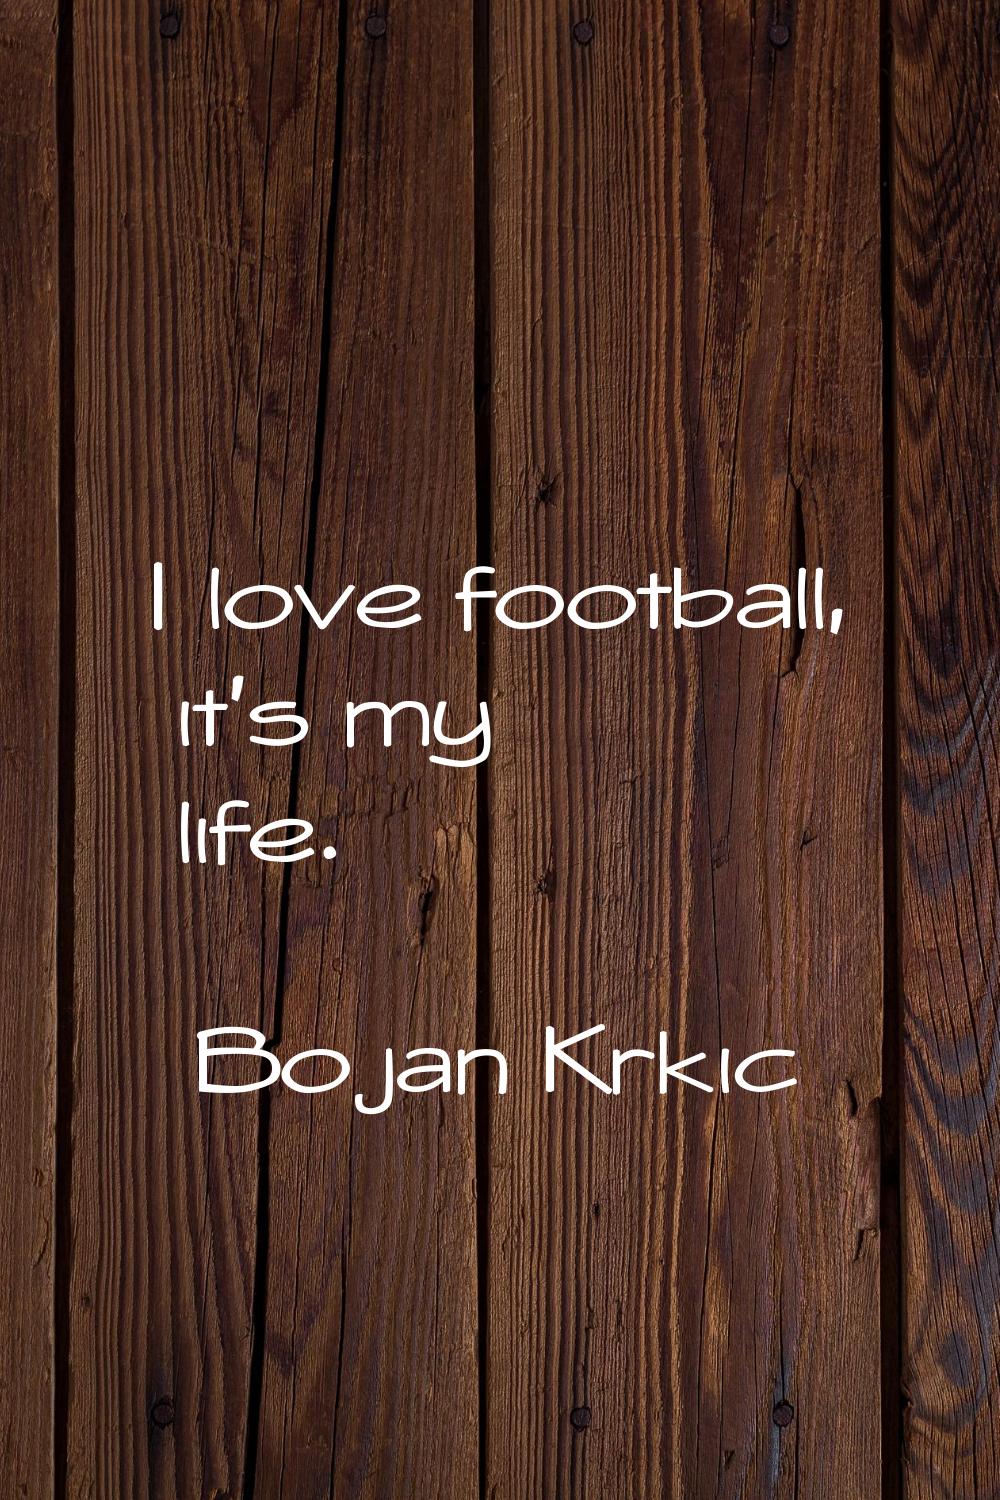 I love football, it's my life.